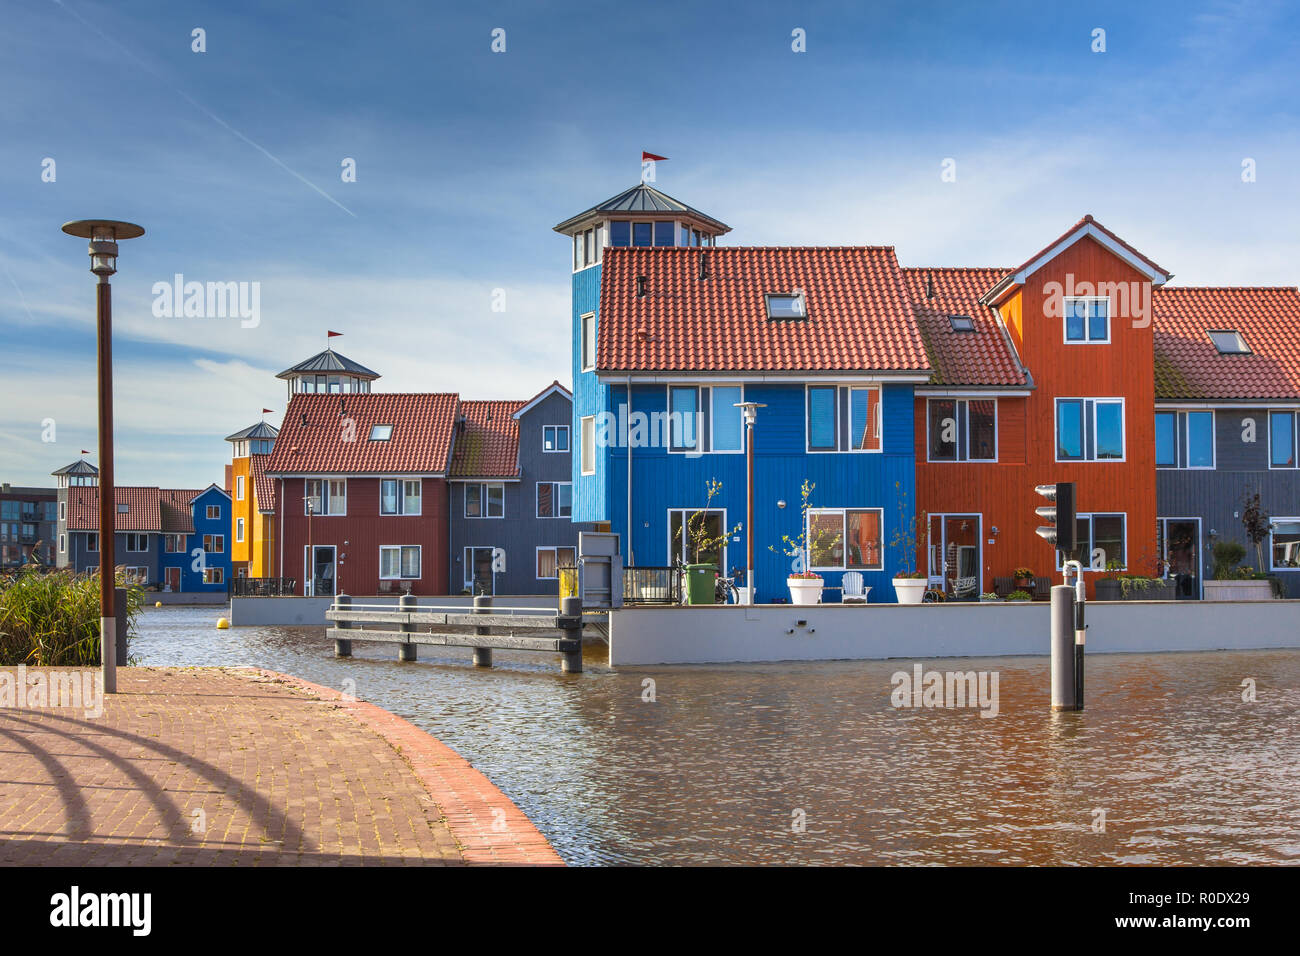 Maisons au bord de l'eau en différentes couleurs à Groningue, Pays-Bas Banque D'Images